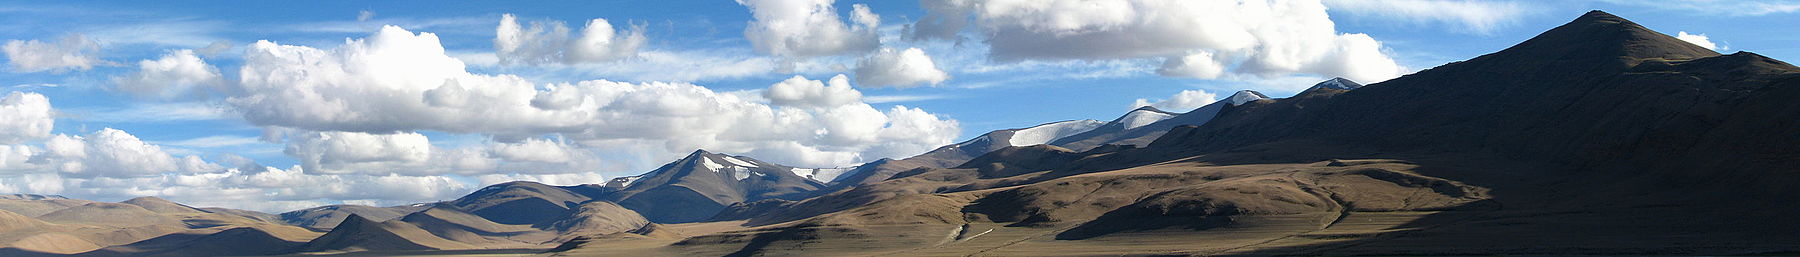 Βουνά στο ανατολικό Ladakh